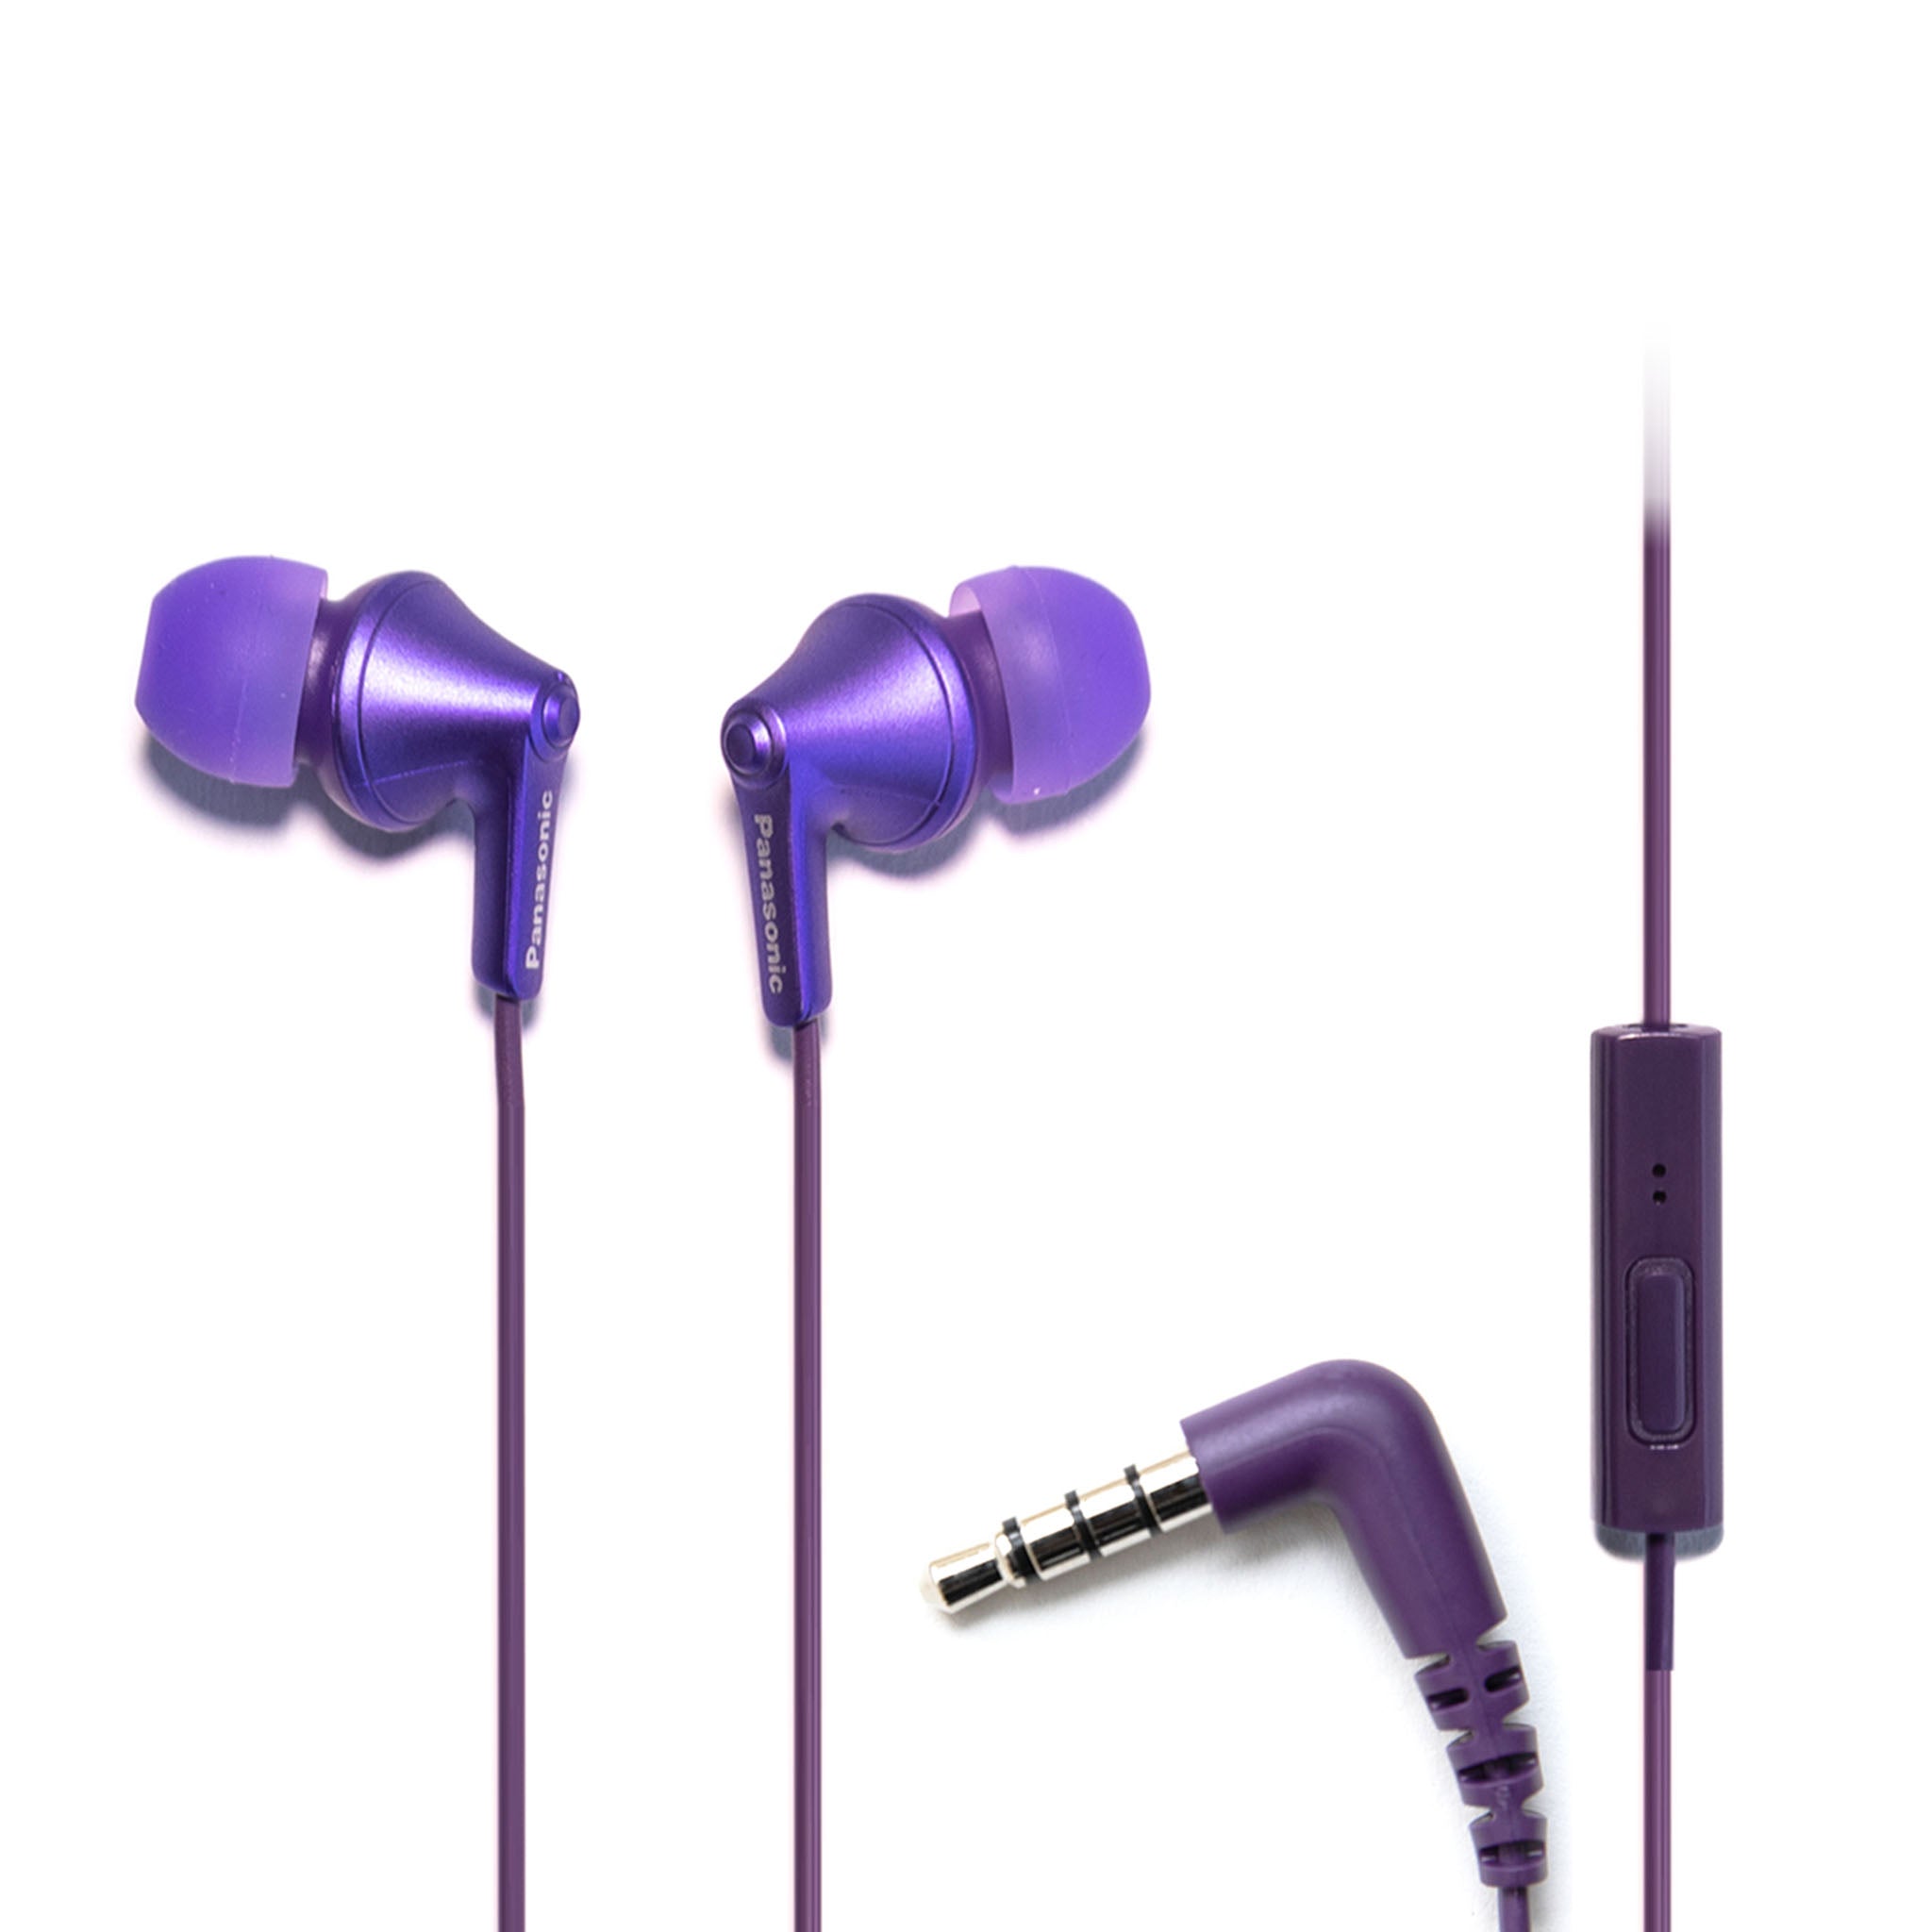 Auriculares Panasonic RP-HJE190E-V, color Púrpura